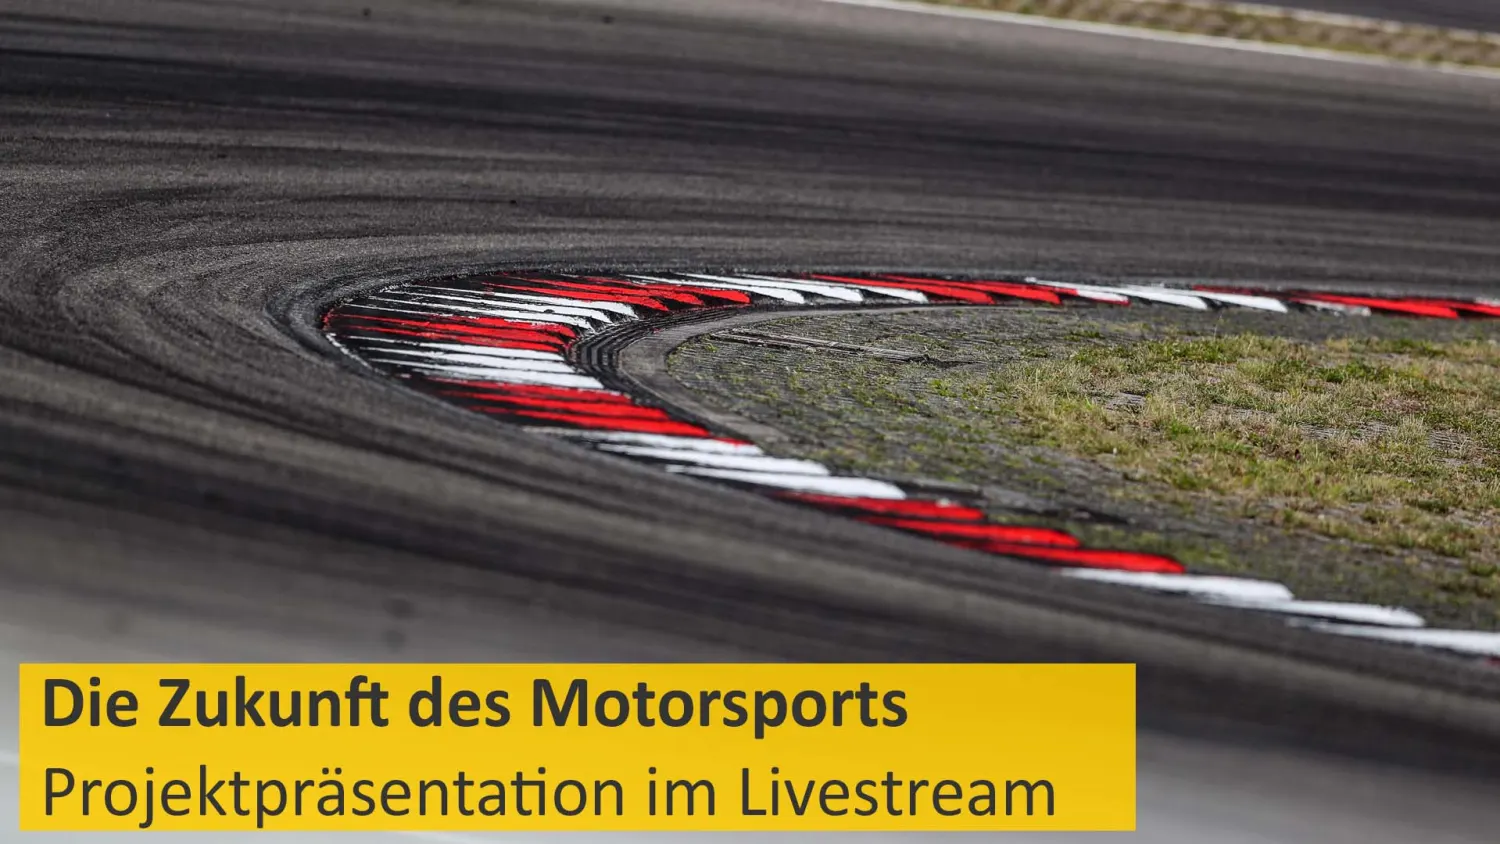 Virtuelle Projektpräsentation Die Zukunft des Motorsports Ab 1030 Uhr im Livestream